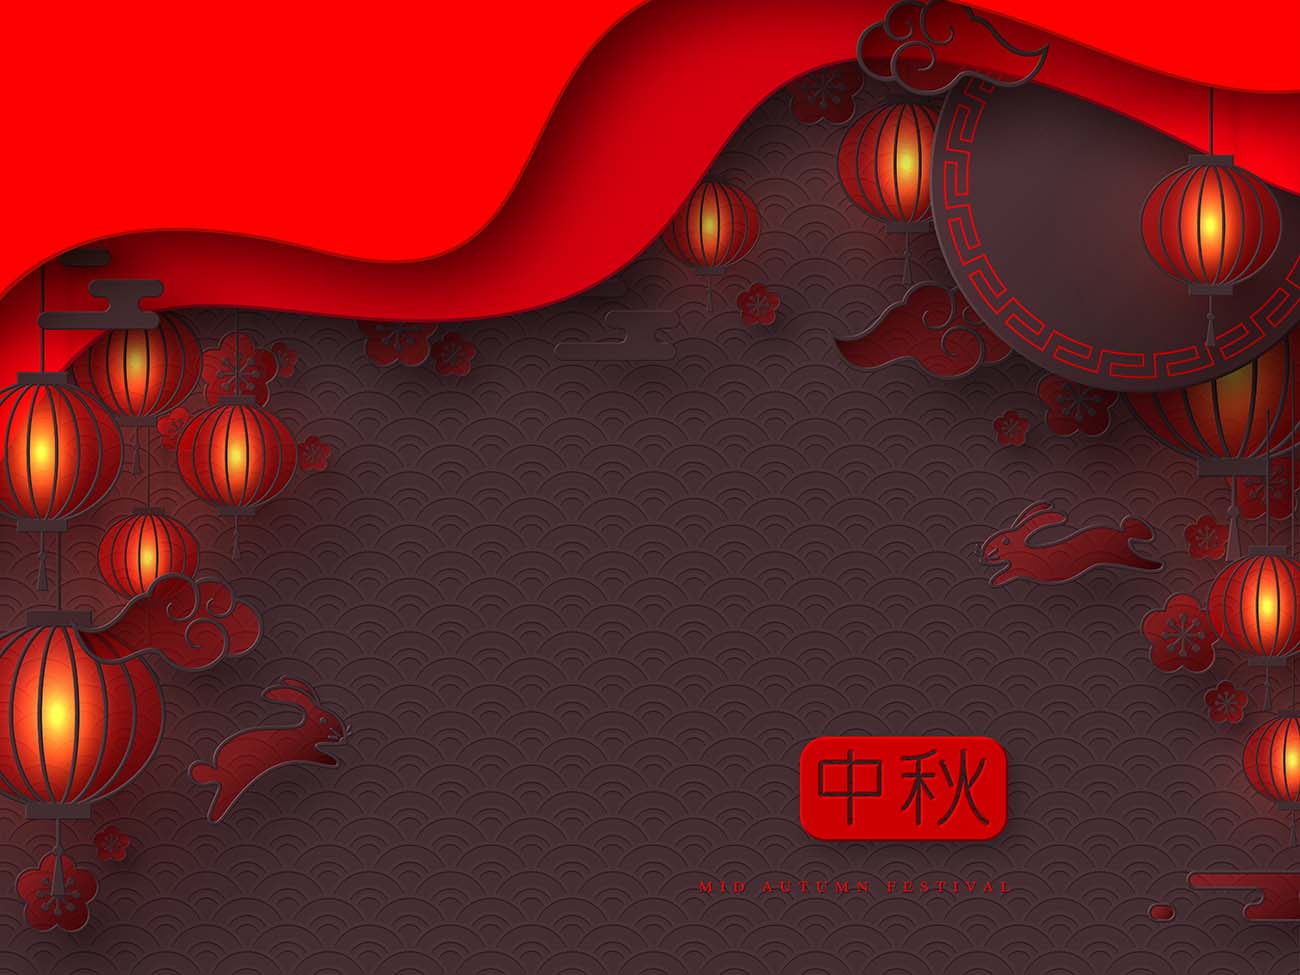 中秋节快乐设计-3d 剪纸中国象形文字、灯笼、云彩和红色兔子-矢量图